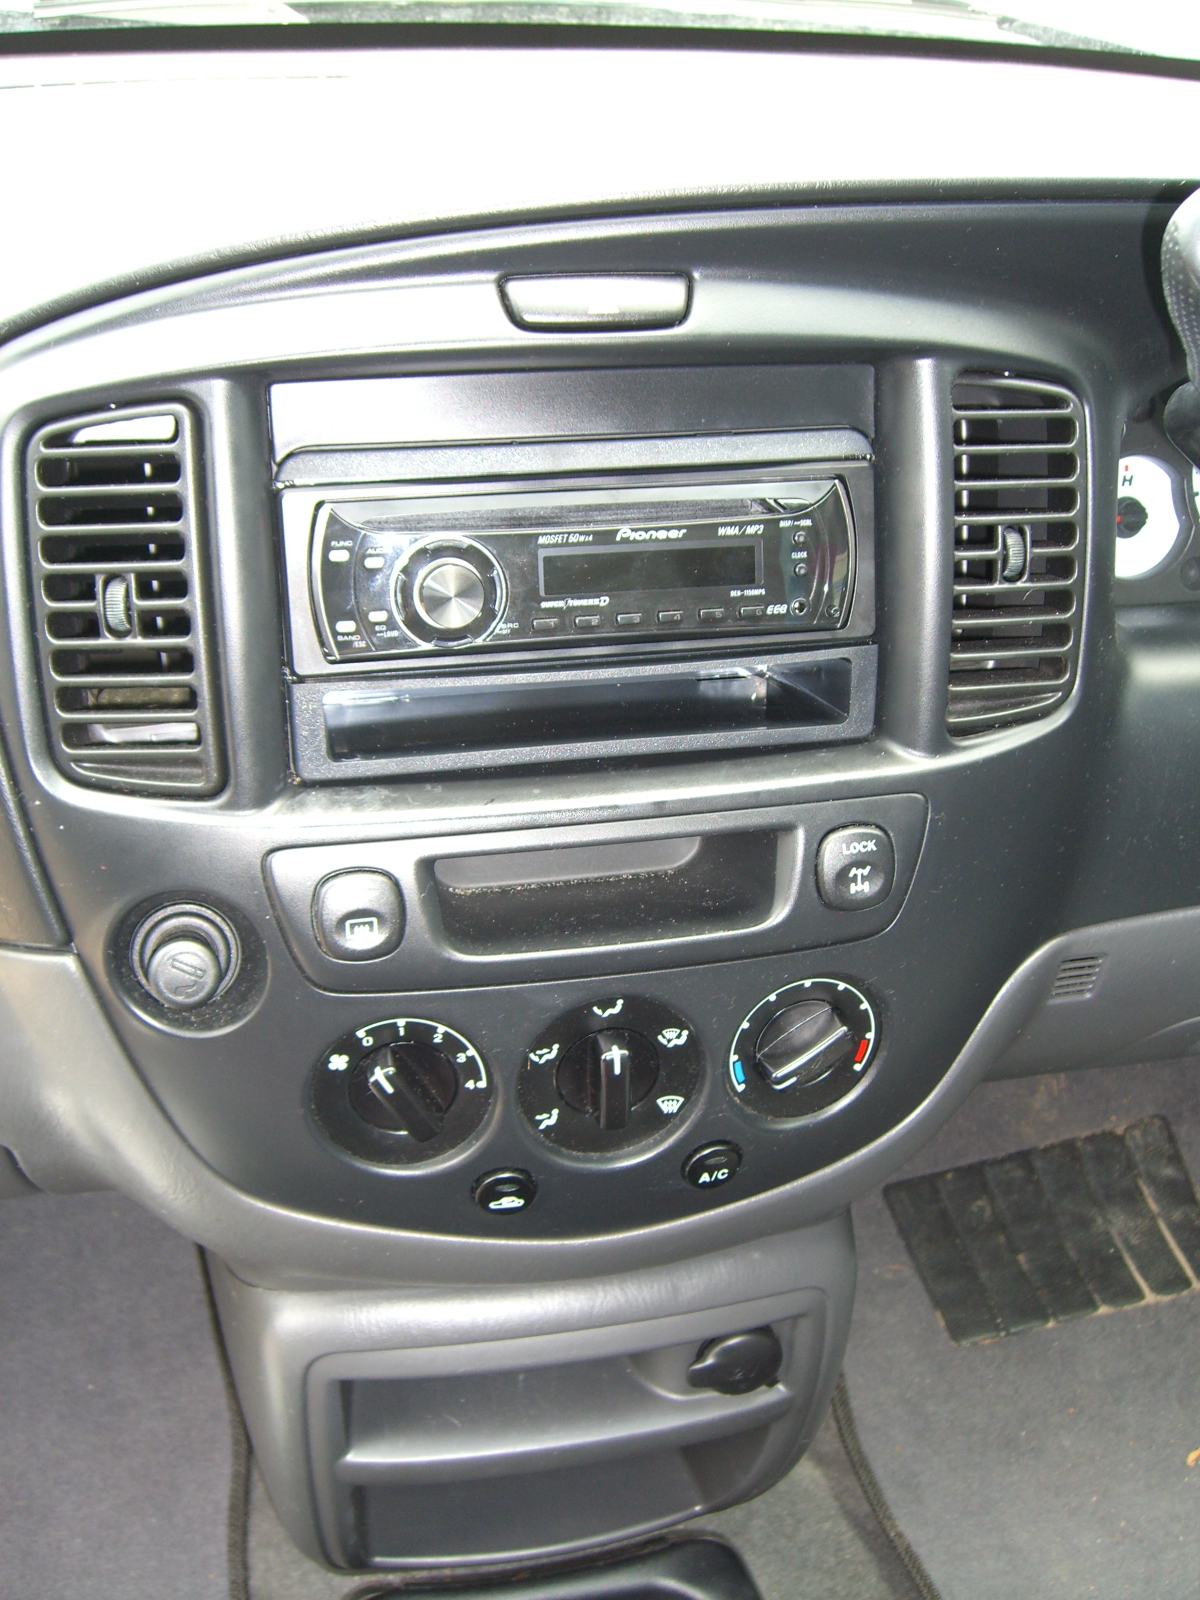 Ford Escape 2004 MP3 CD Radio upgrade